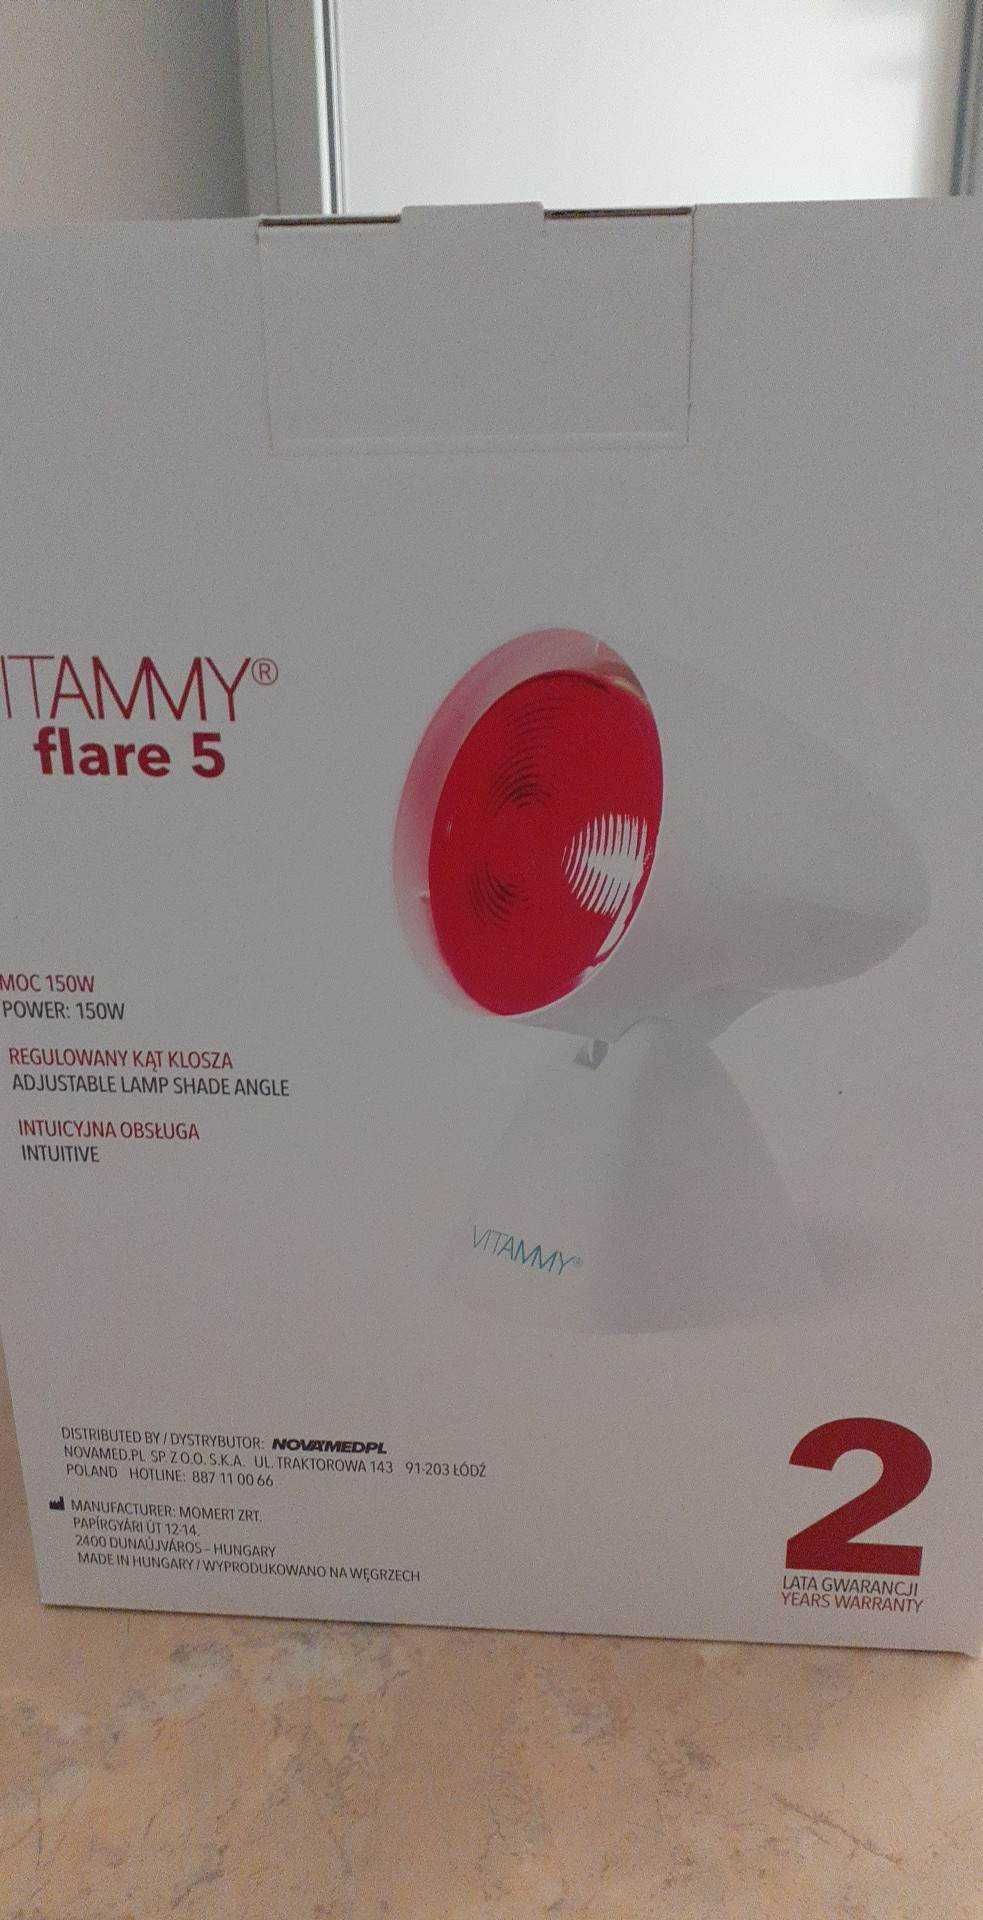 vitammy flare 5 150w lampa rozgrzewająca na podczerwień